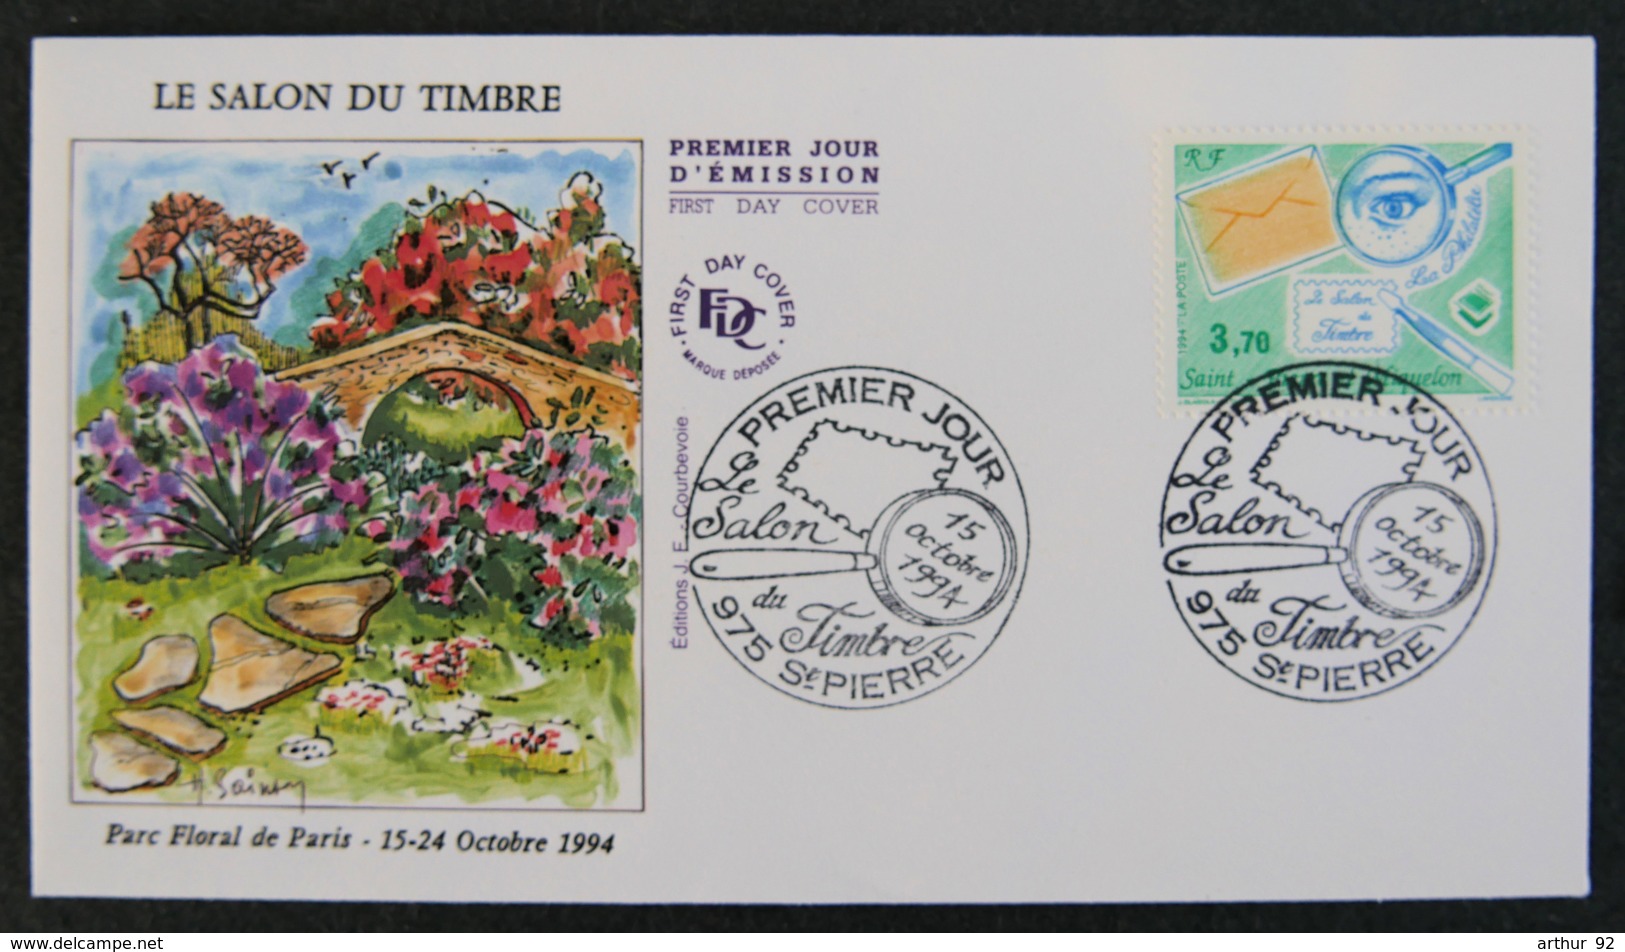 ST PIERRE ET MIQUELON - 1994 - FDC 606 - SALON DU TIMBRE 1994 - PARC FLORAL DE PARIS 1994 - FDC